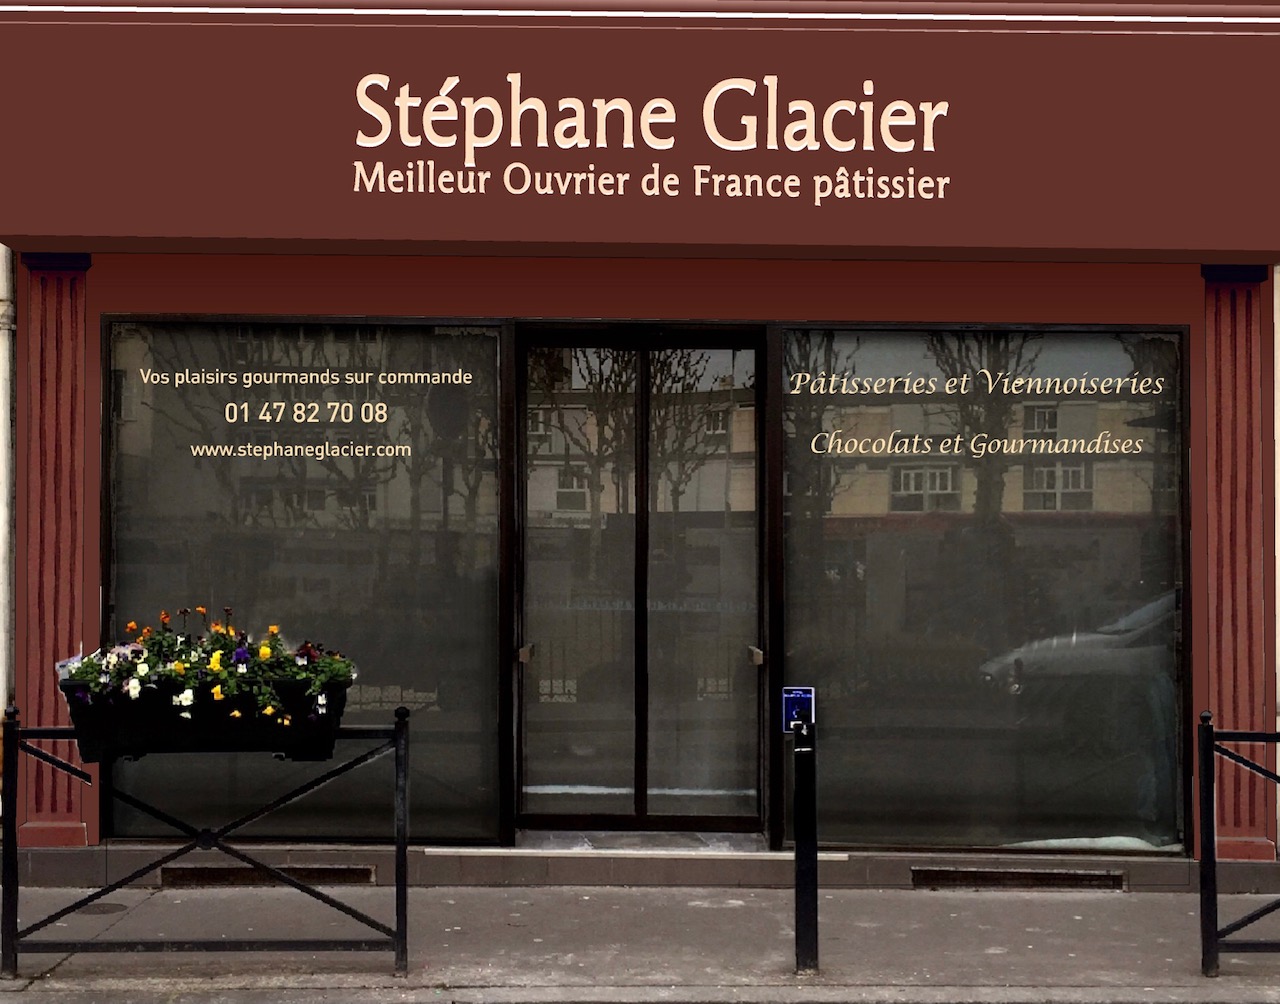 Pâtisseries et gourmandises par Stéphane Glacier